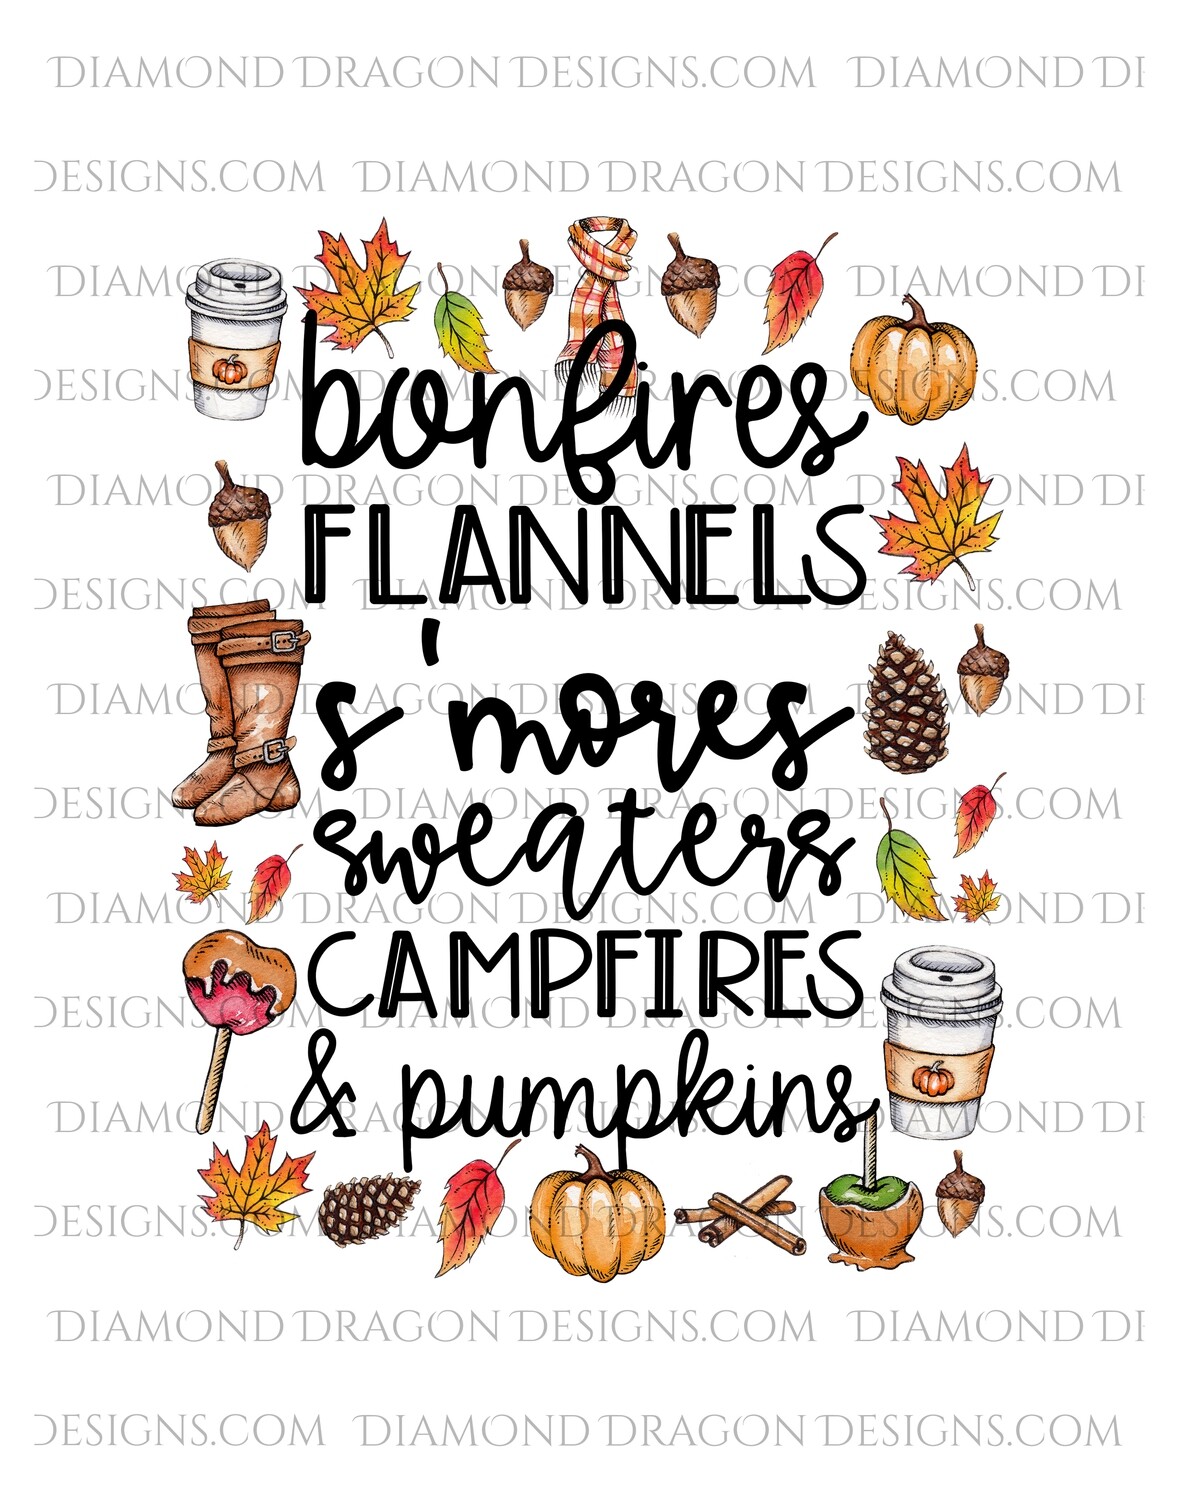 Fall - Fall Things, Leaves, Sweaters, Pumpkins, Waterslide